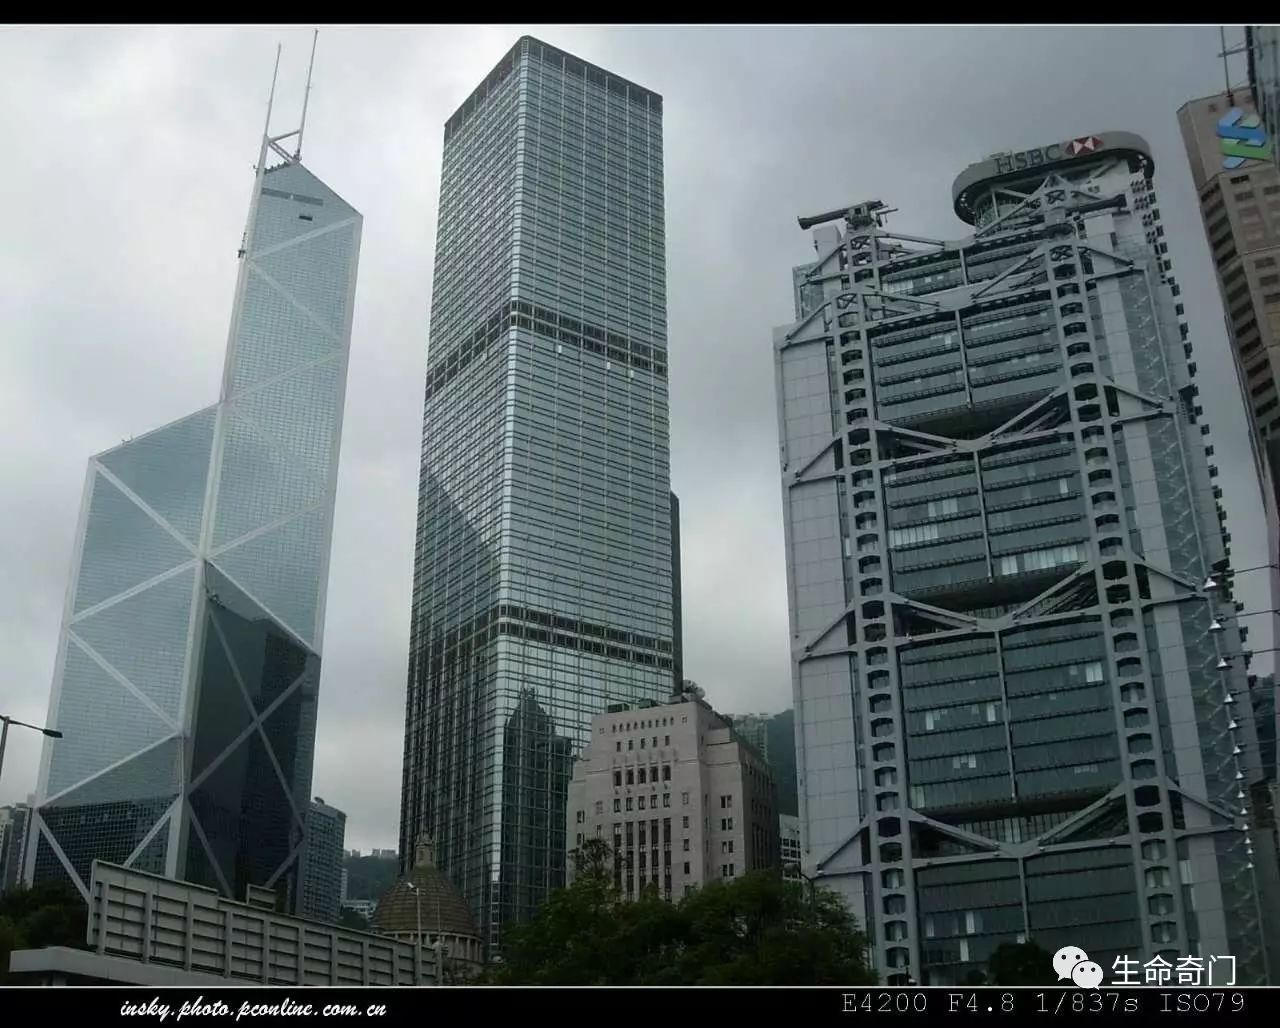 第二年,汇丰大厦的顶楼就架起了两门长达17米的大钢炮,直对中国银行.